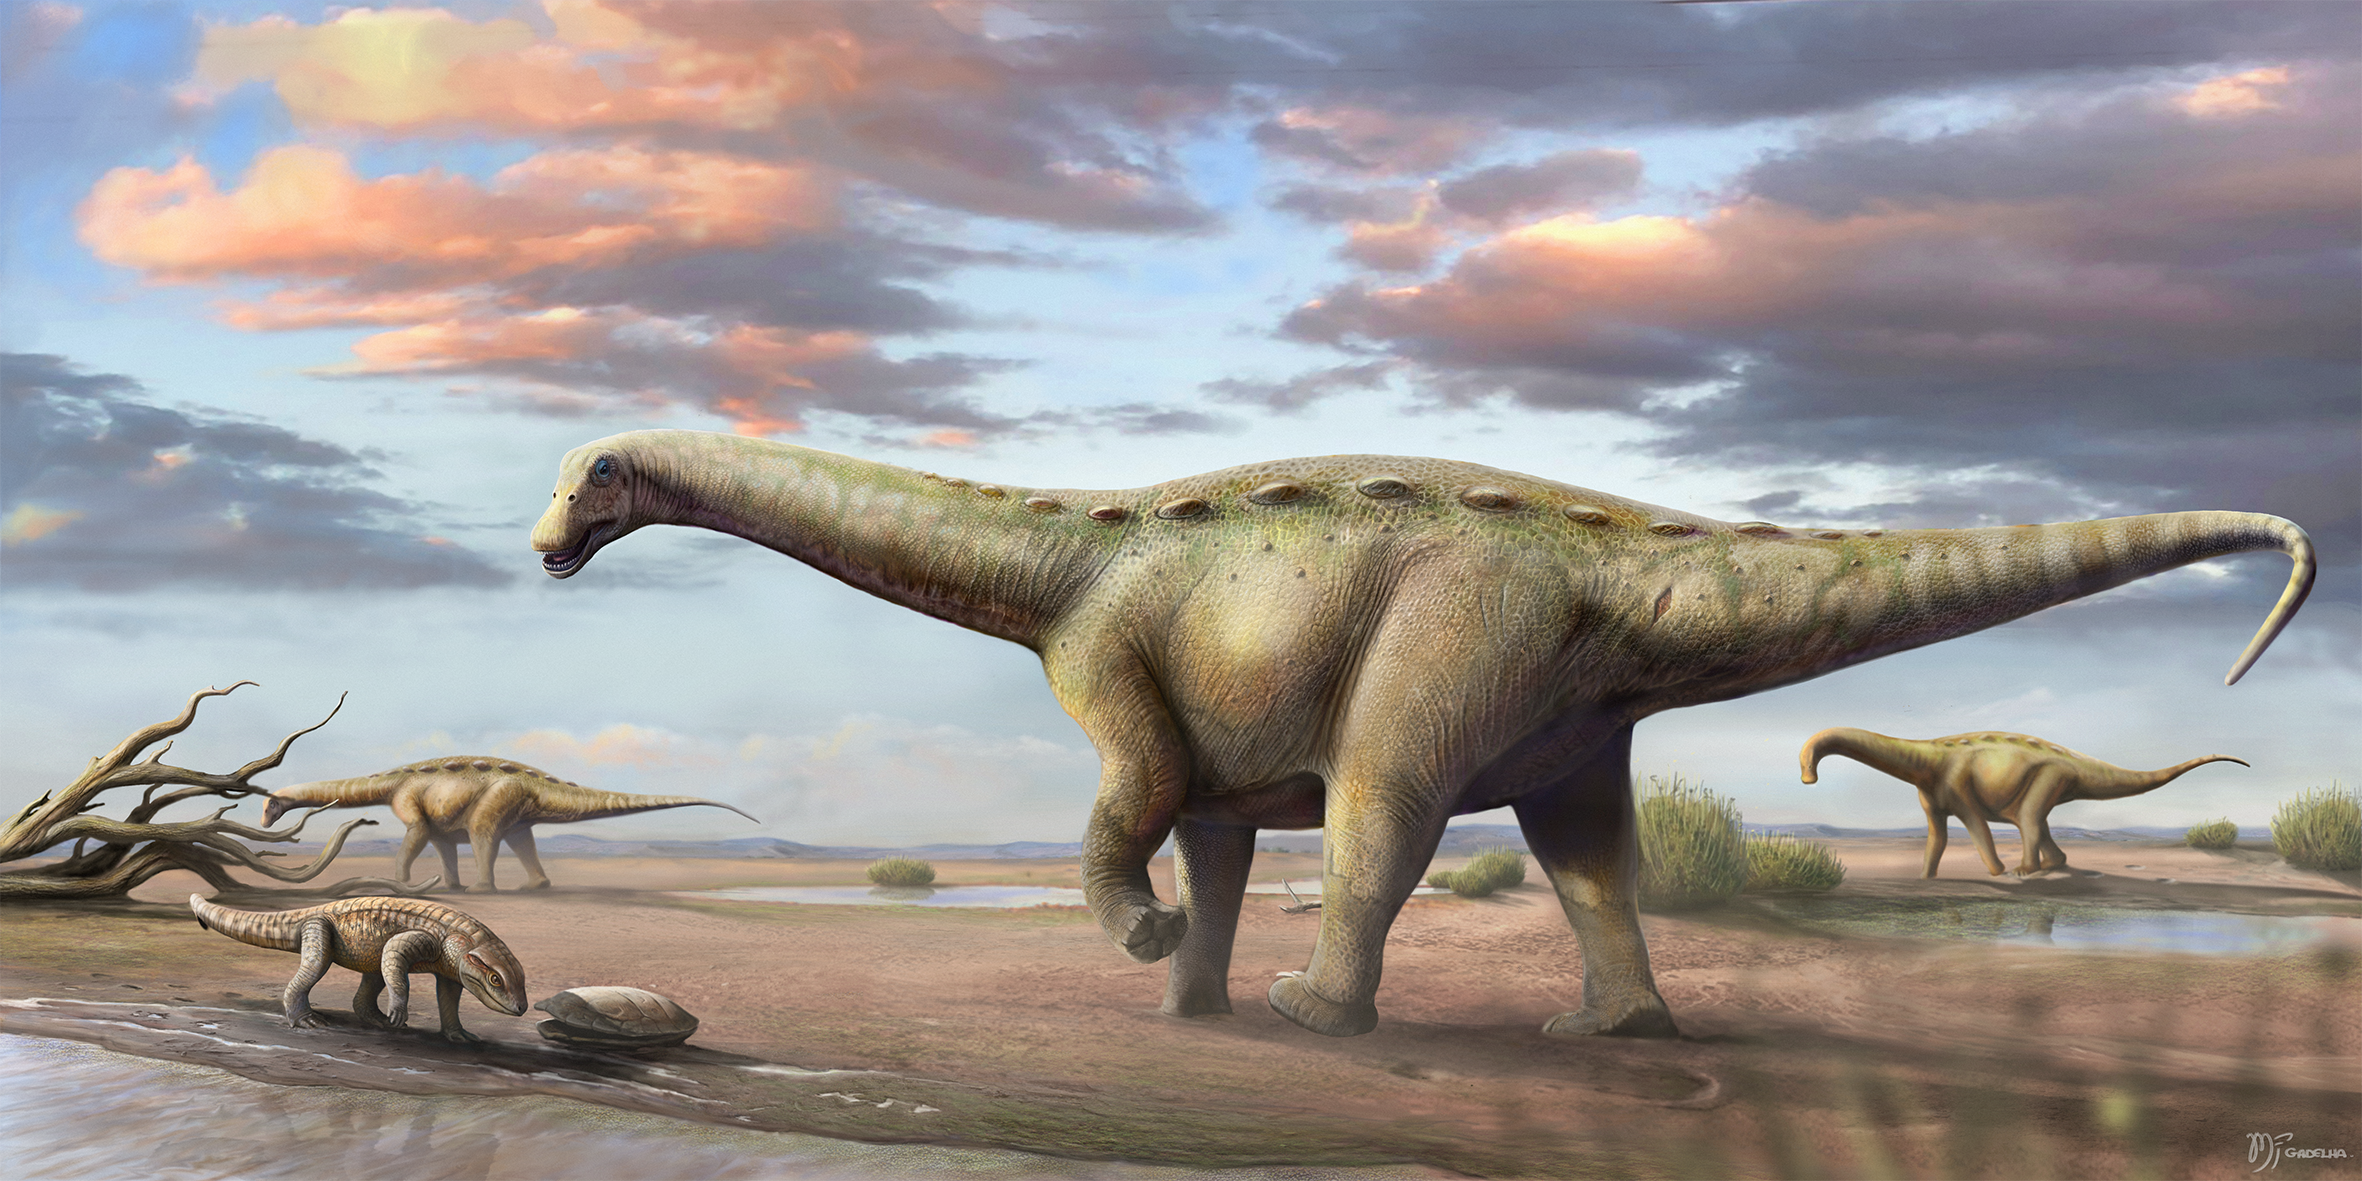 Jedním ze sauropodů, formálně popsaných v loňském roce, byl také druh Ibirania parva z Brazílie. Pozoruhodné jsou zejména rozměry tohoto saltasaurina – nikoliv ale proto, že by se jednalo o obra, jak jsme u sauropodů zvyklí. Je tomu přesně naopak – t